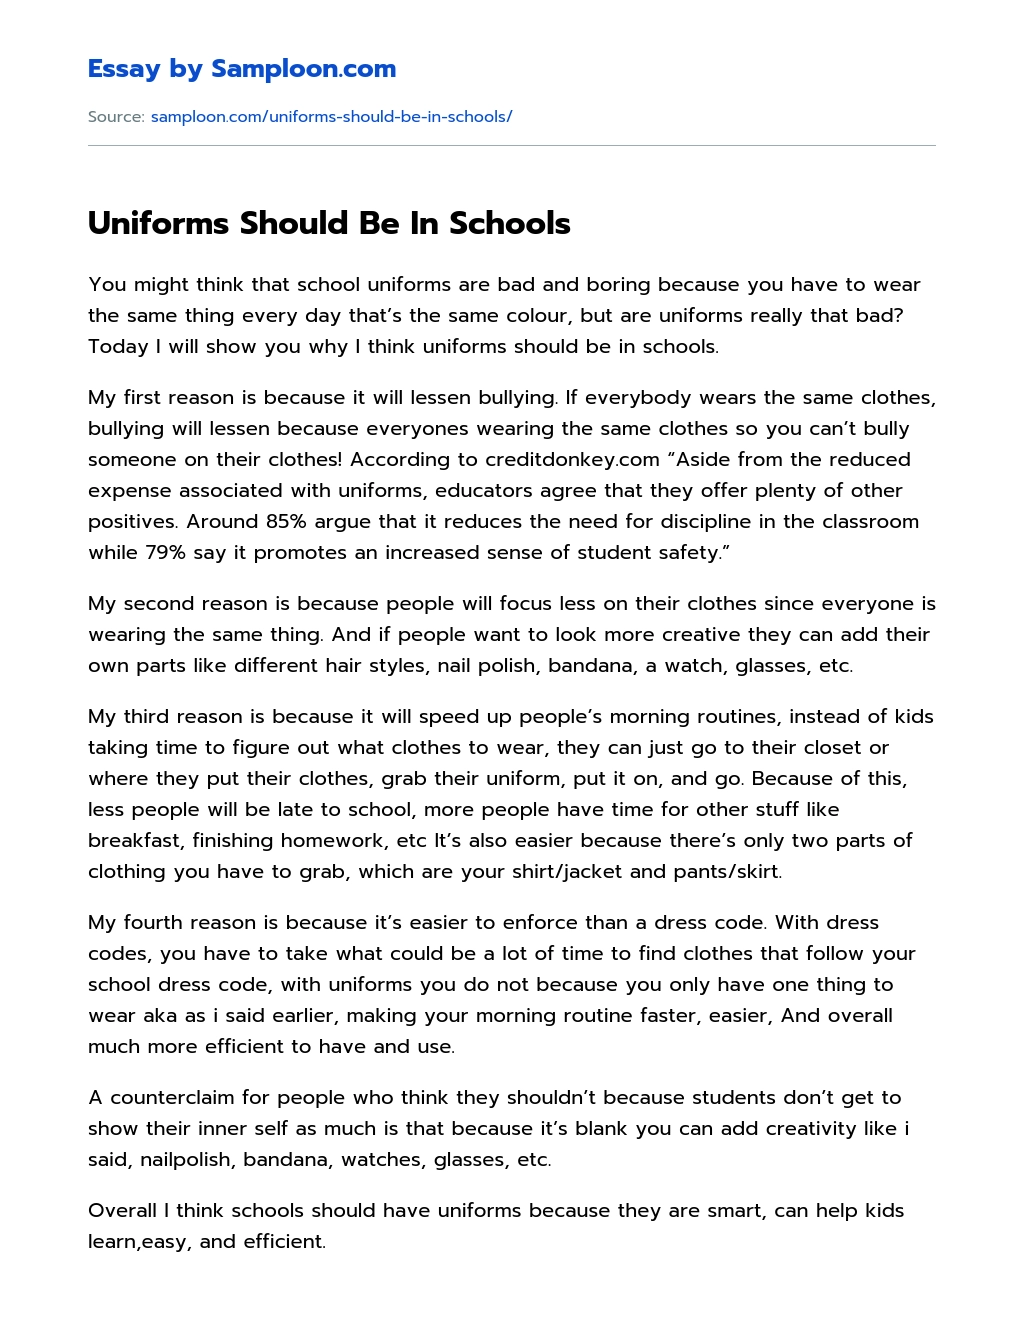 Uniforms Should Be In Schools essay